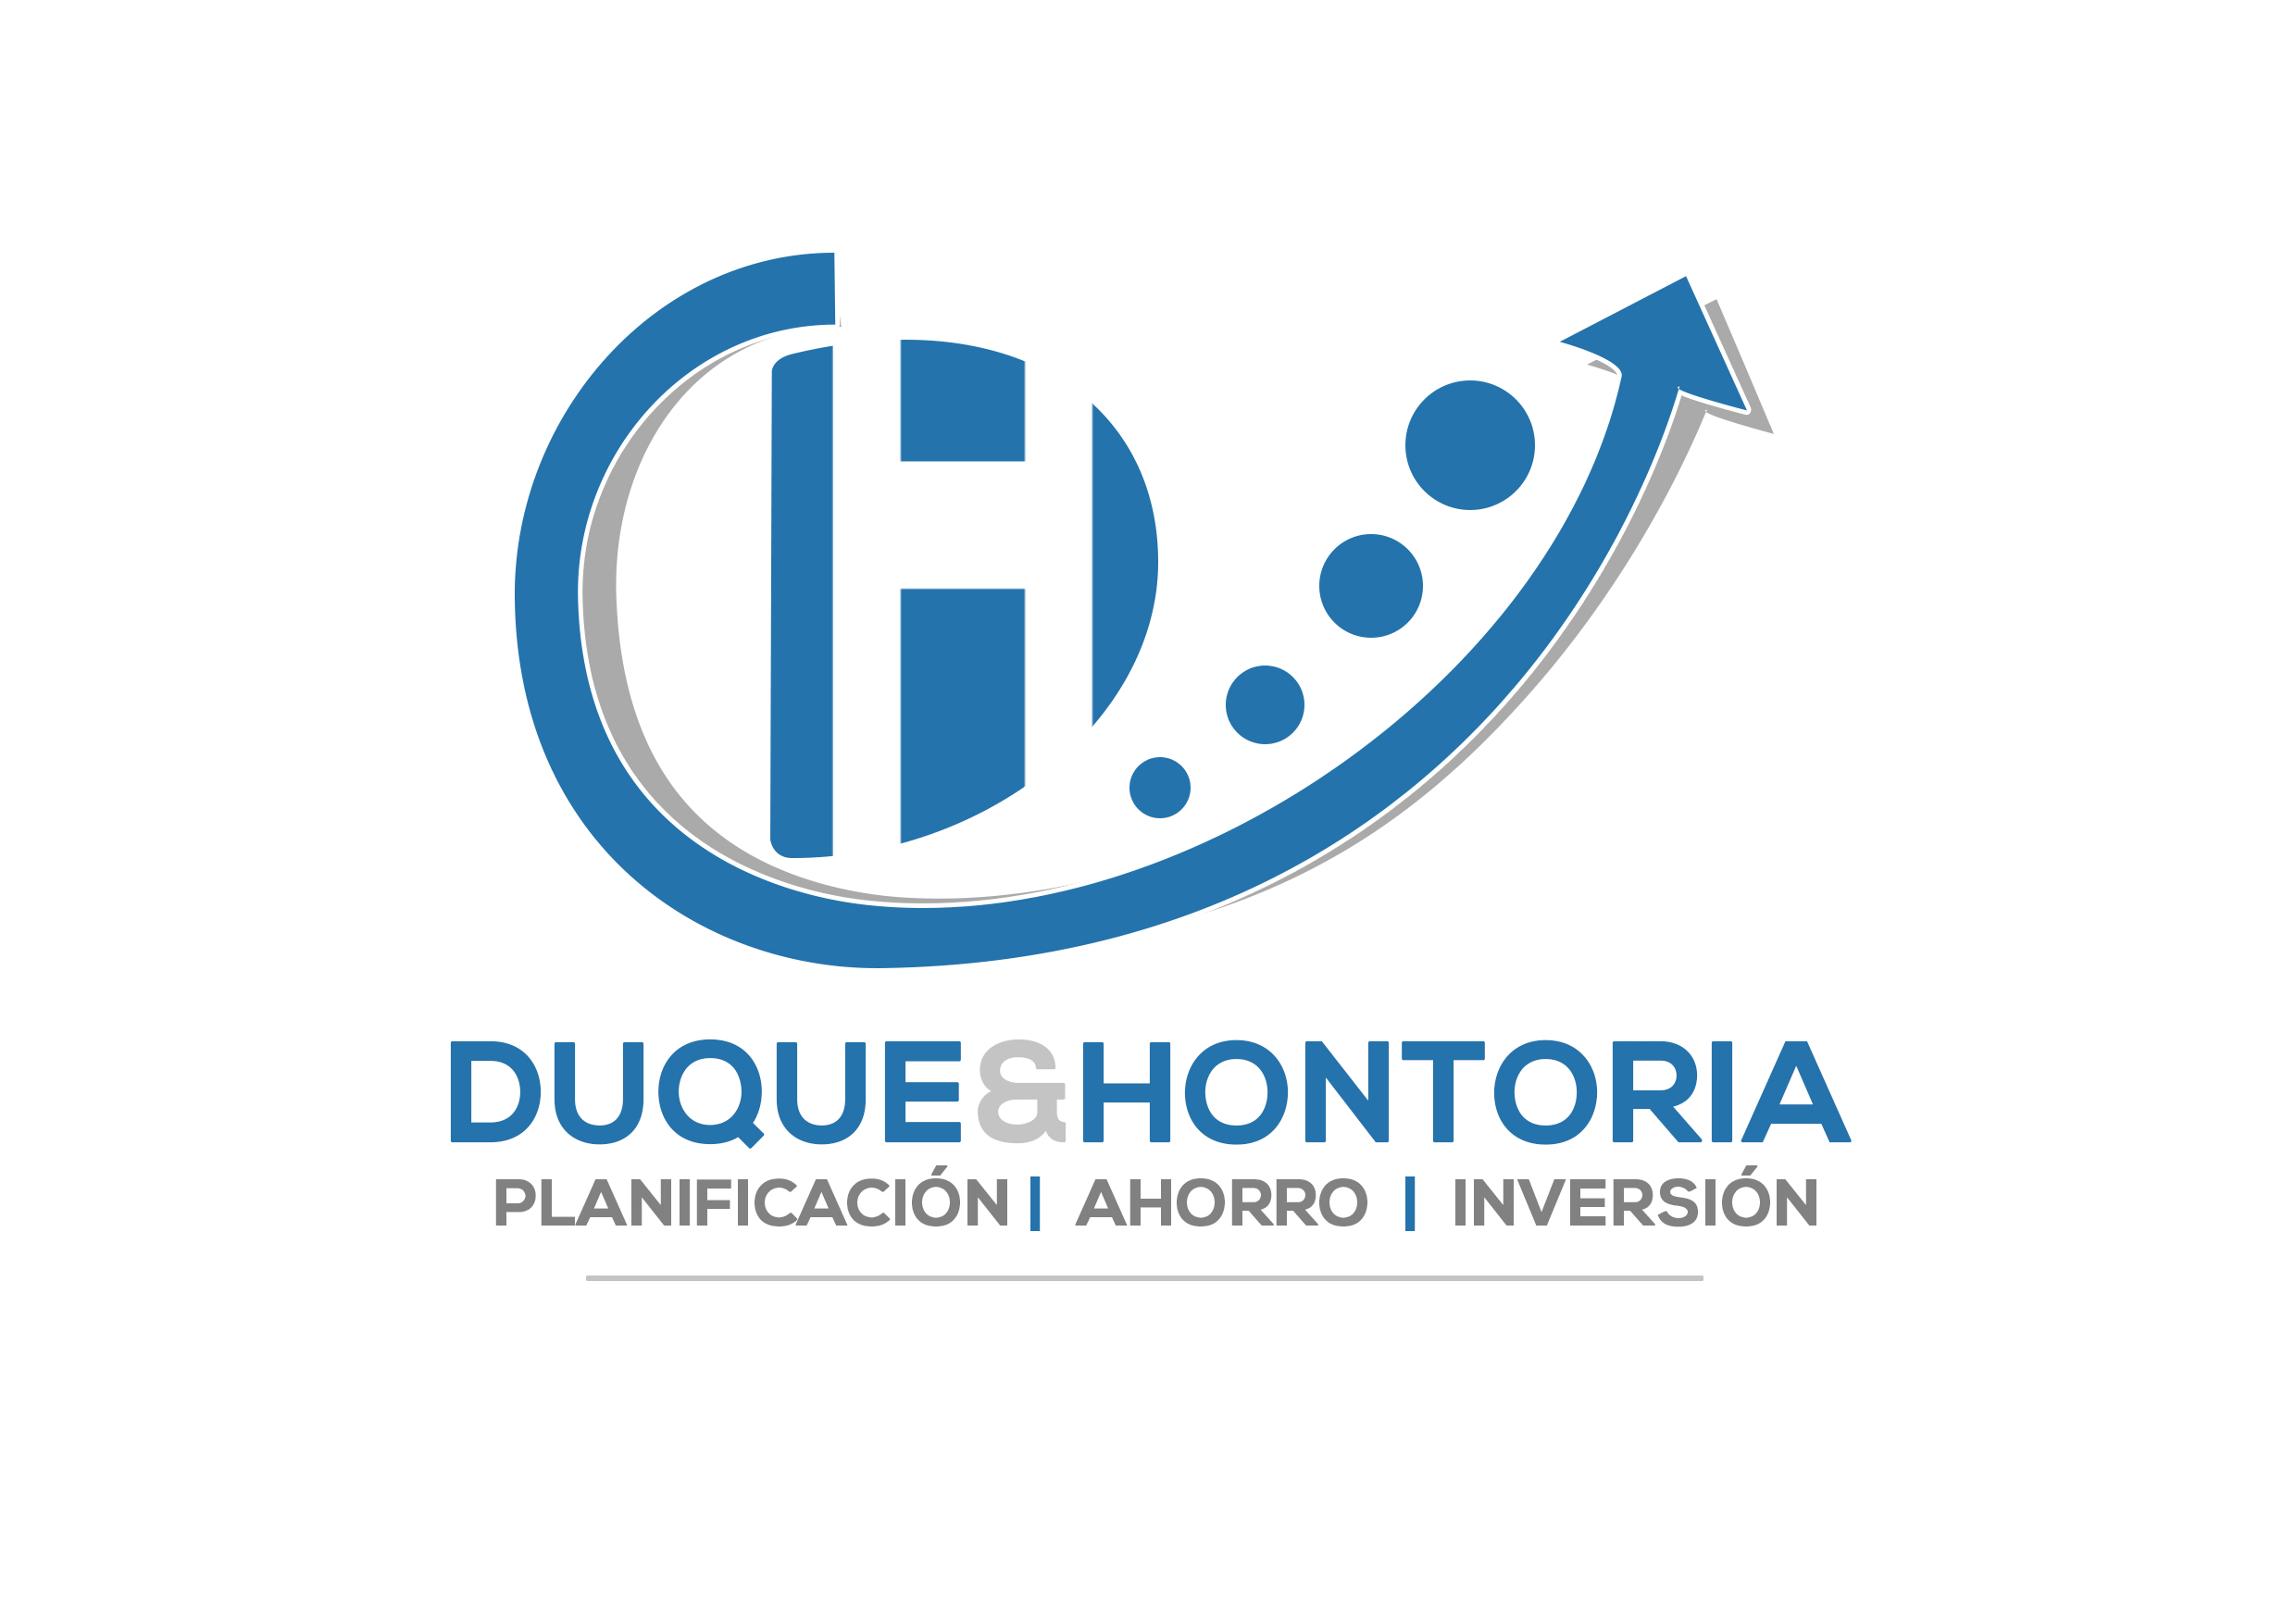 Duque & Hontoria